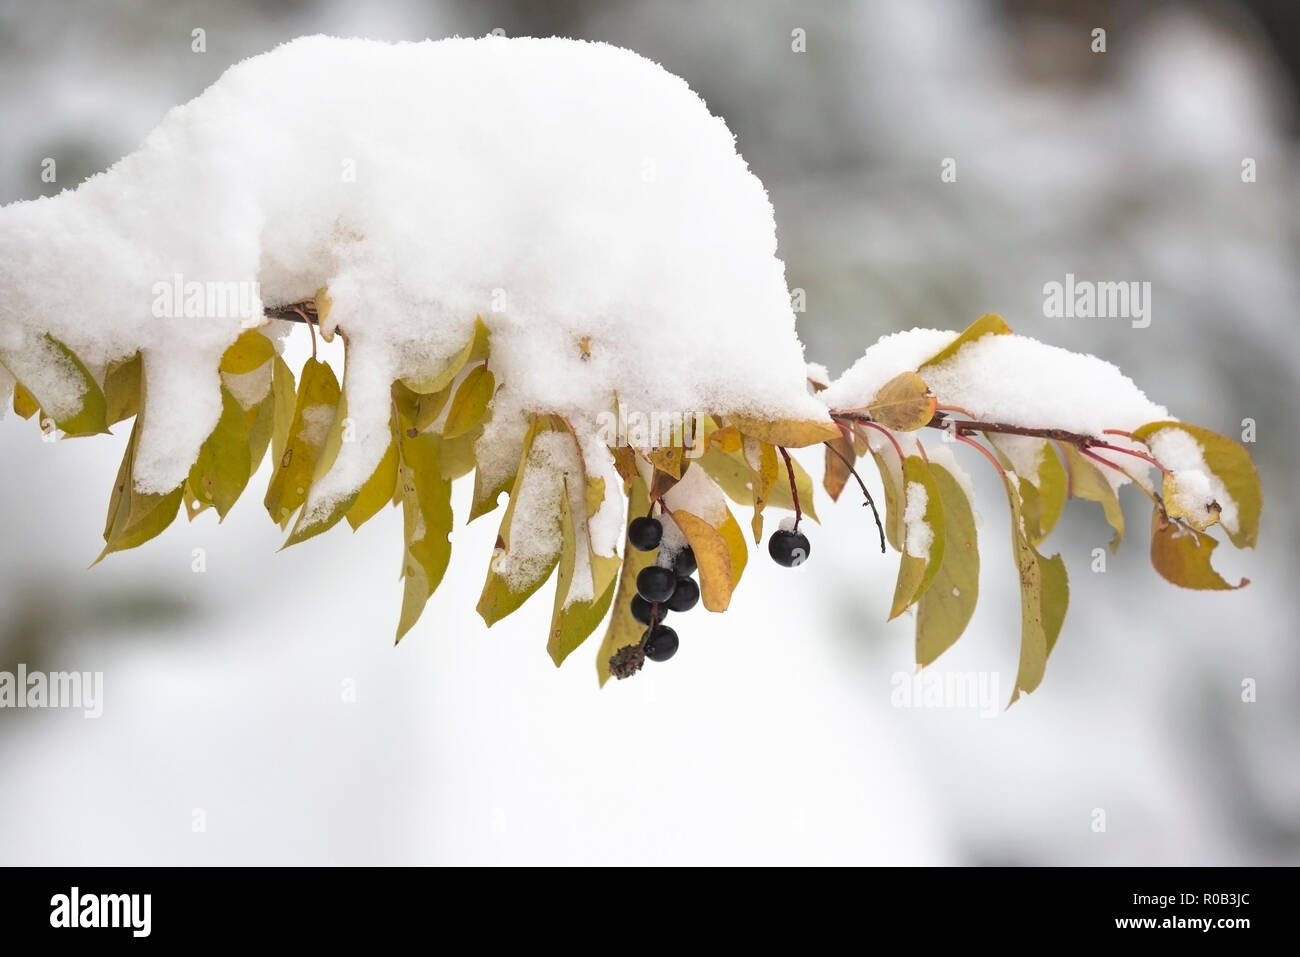 In Calgary, Kanada, liegen die Blätter der Würfelkirsche (Prunus virginiana) im Herbst nach dem frühen Schneefall Anfang Oktober mit Schnee bedeckt. Stockfoto